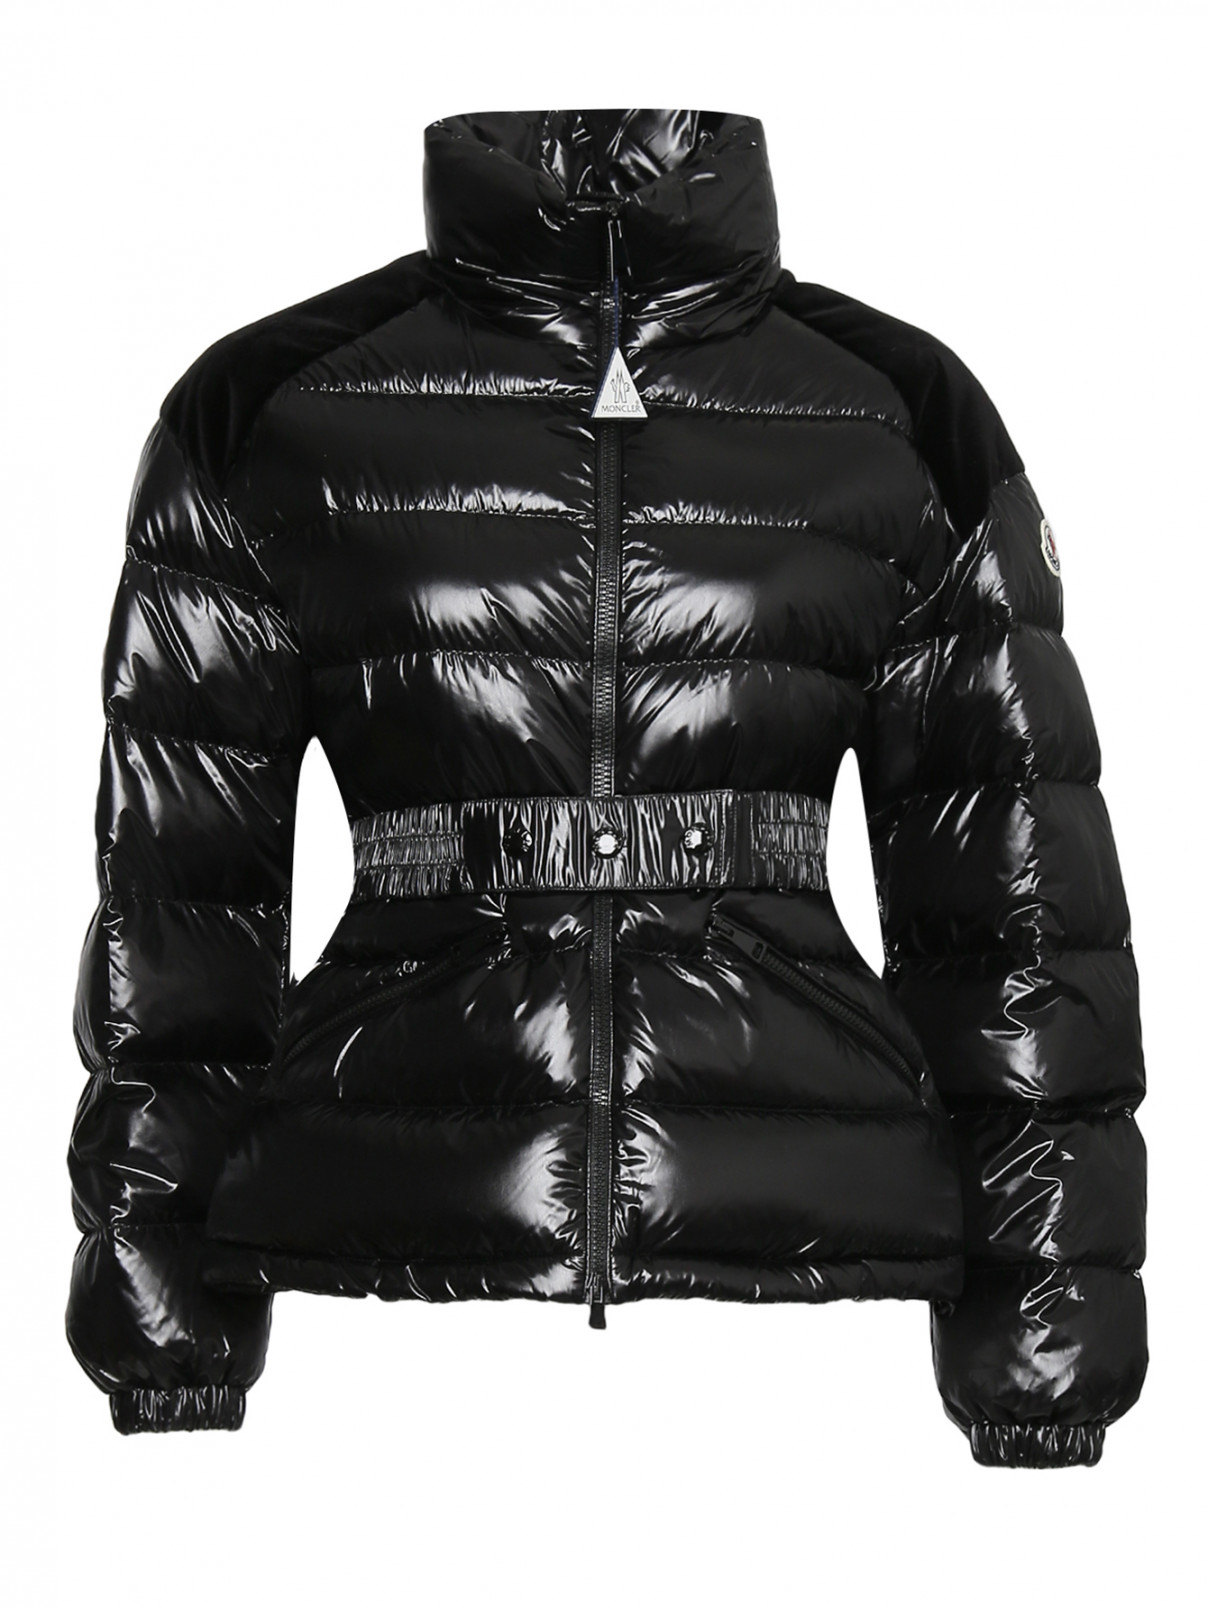 Куртка пуховая на молнии с декоративными вставками на плечах Moncler  –  Общий вид  – Цвет:  Черный